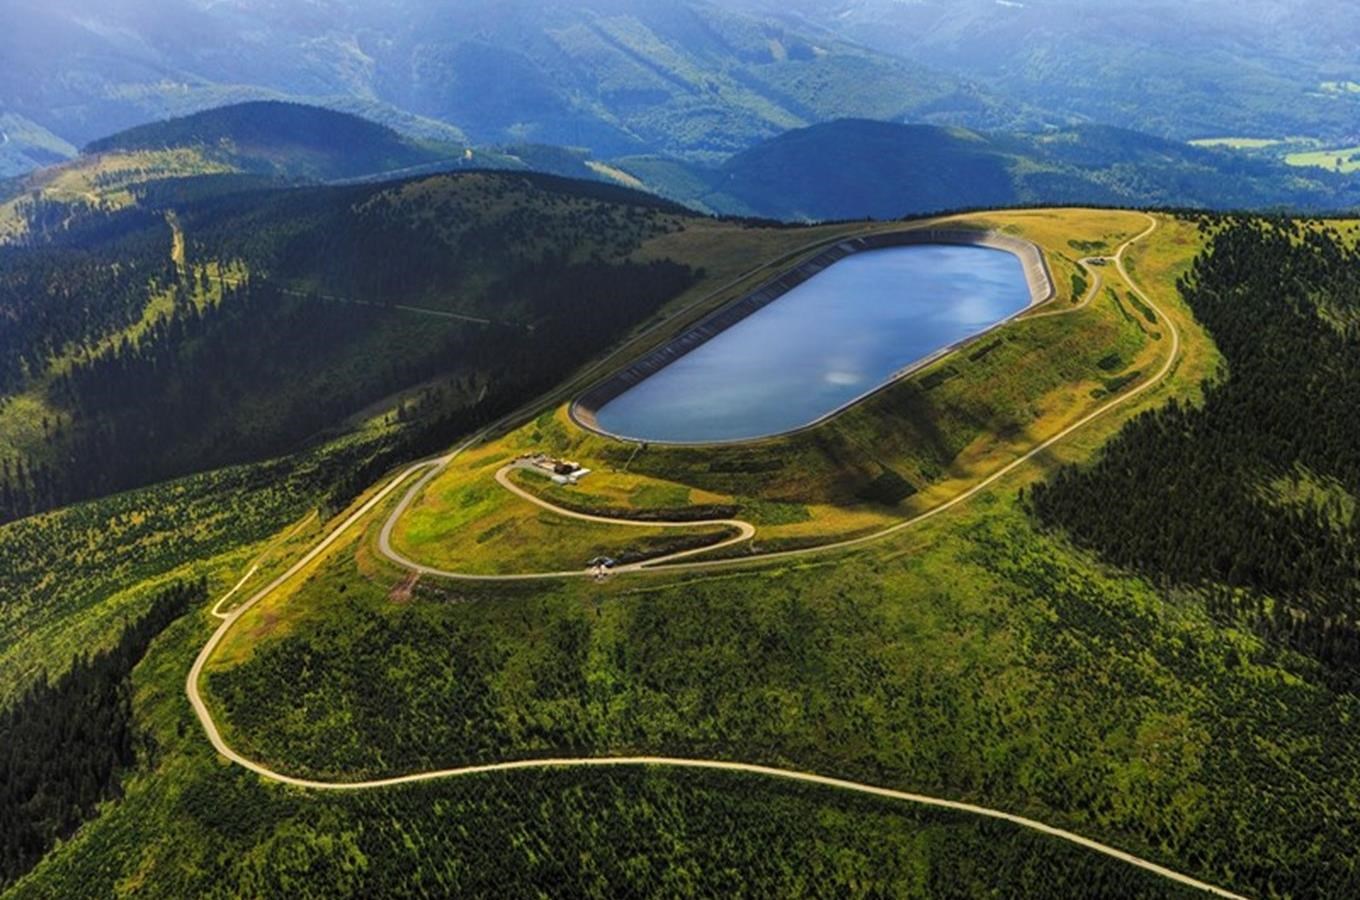 Přečerpávací vodní elektrárna Dlouhé stráně – jeden ze 7 divů Česka